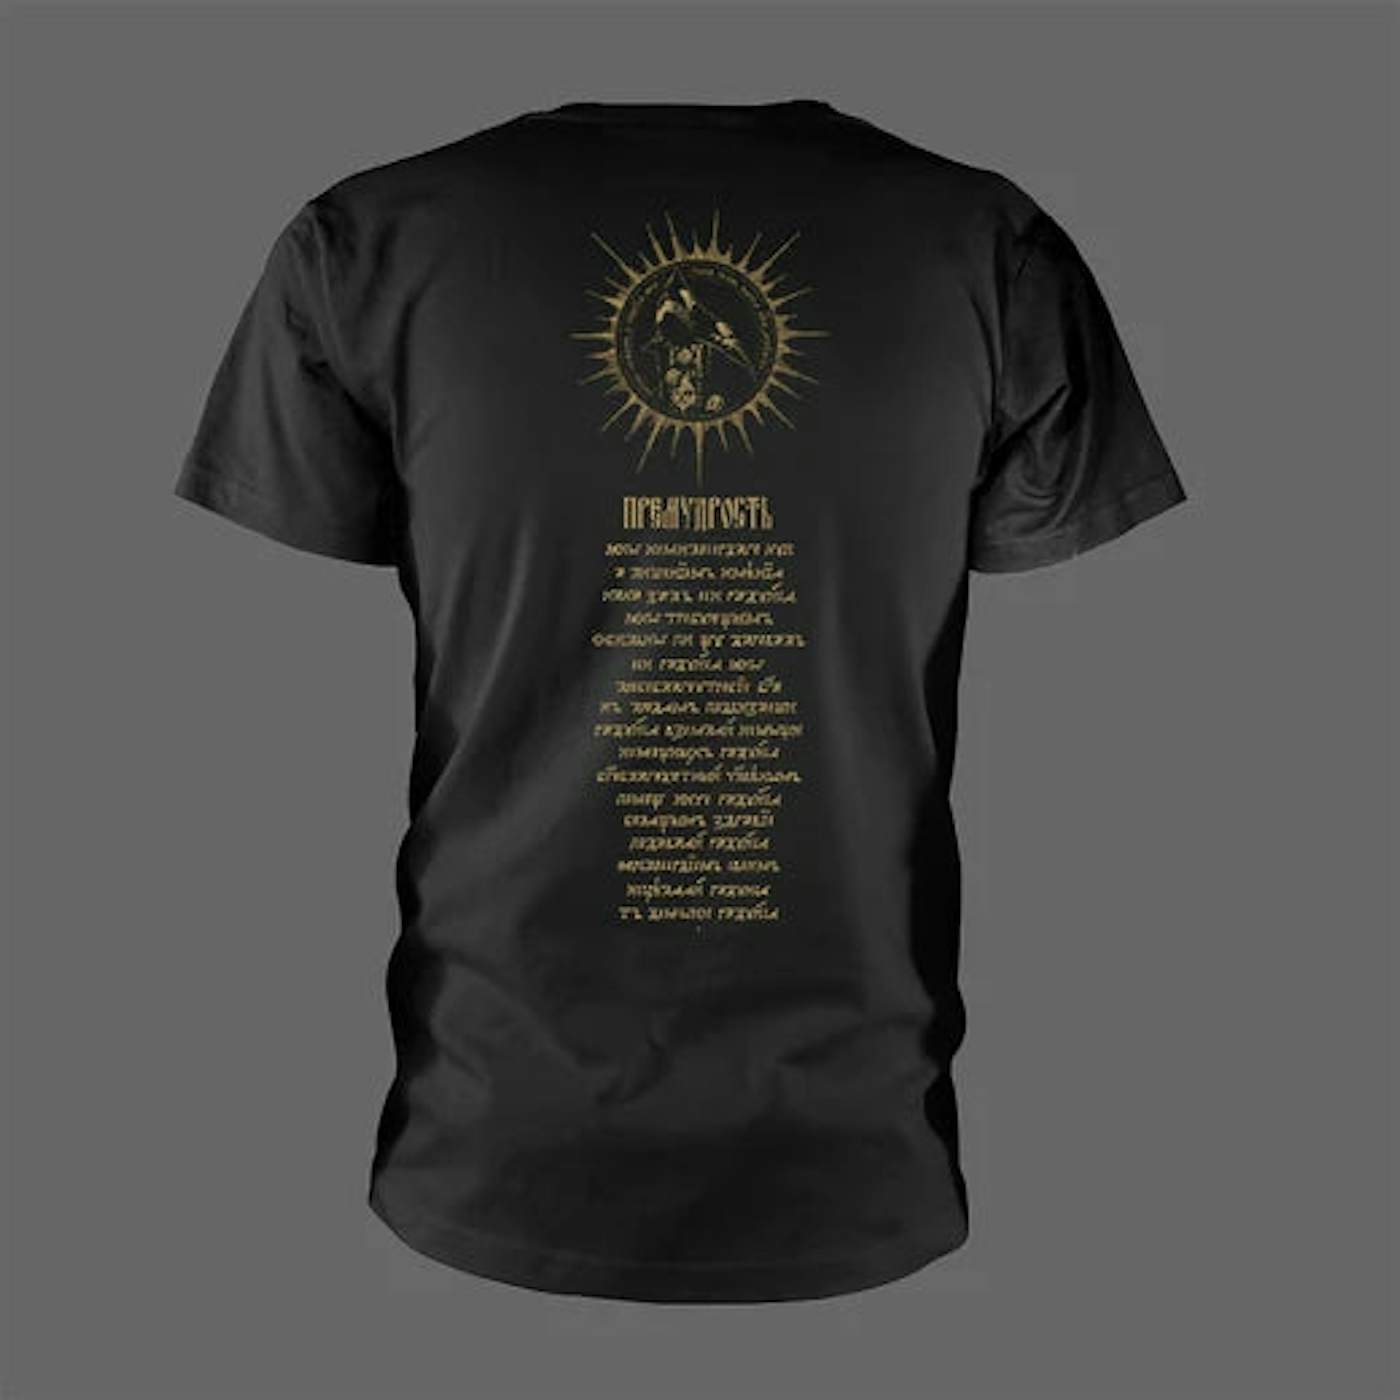 Batushka T Shirt - Premudrost